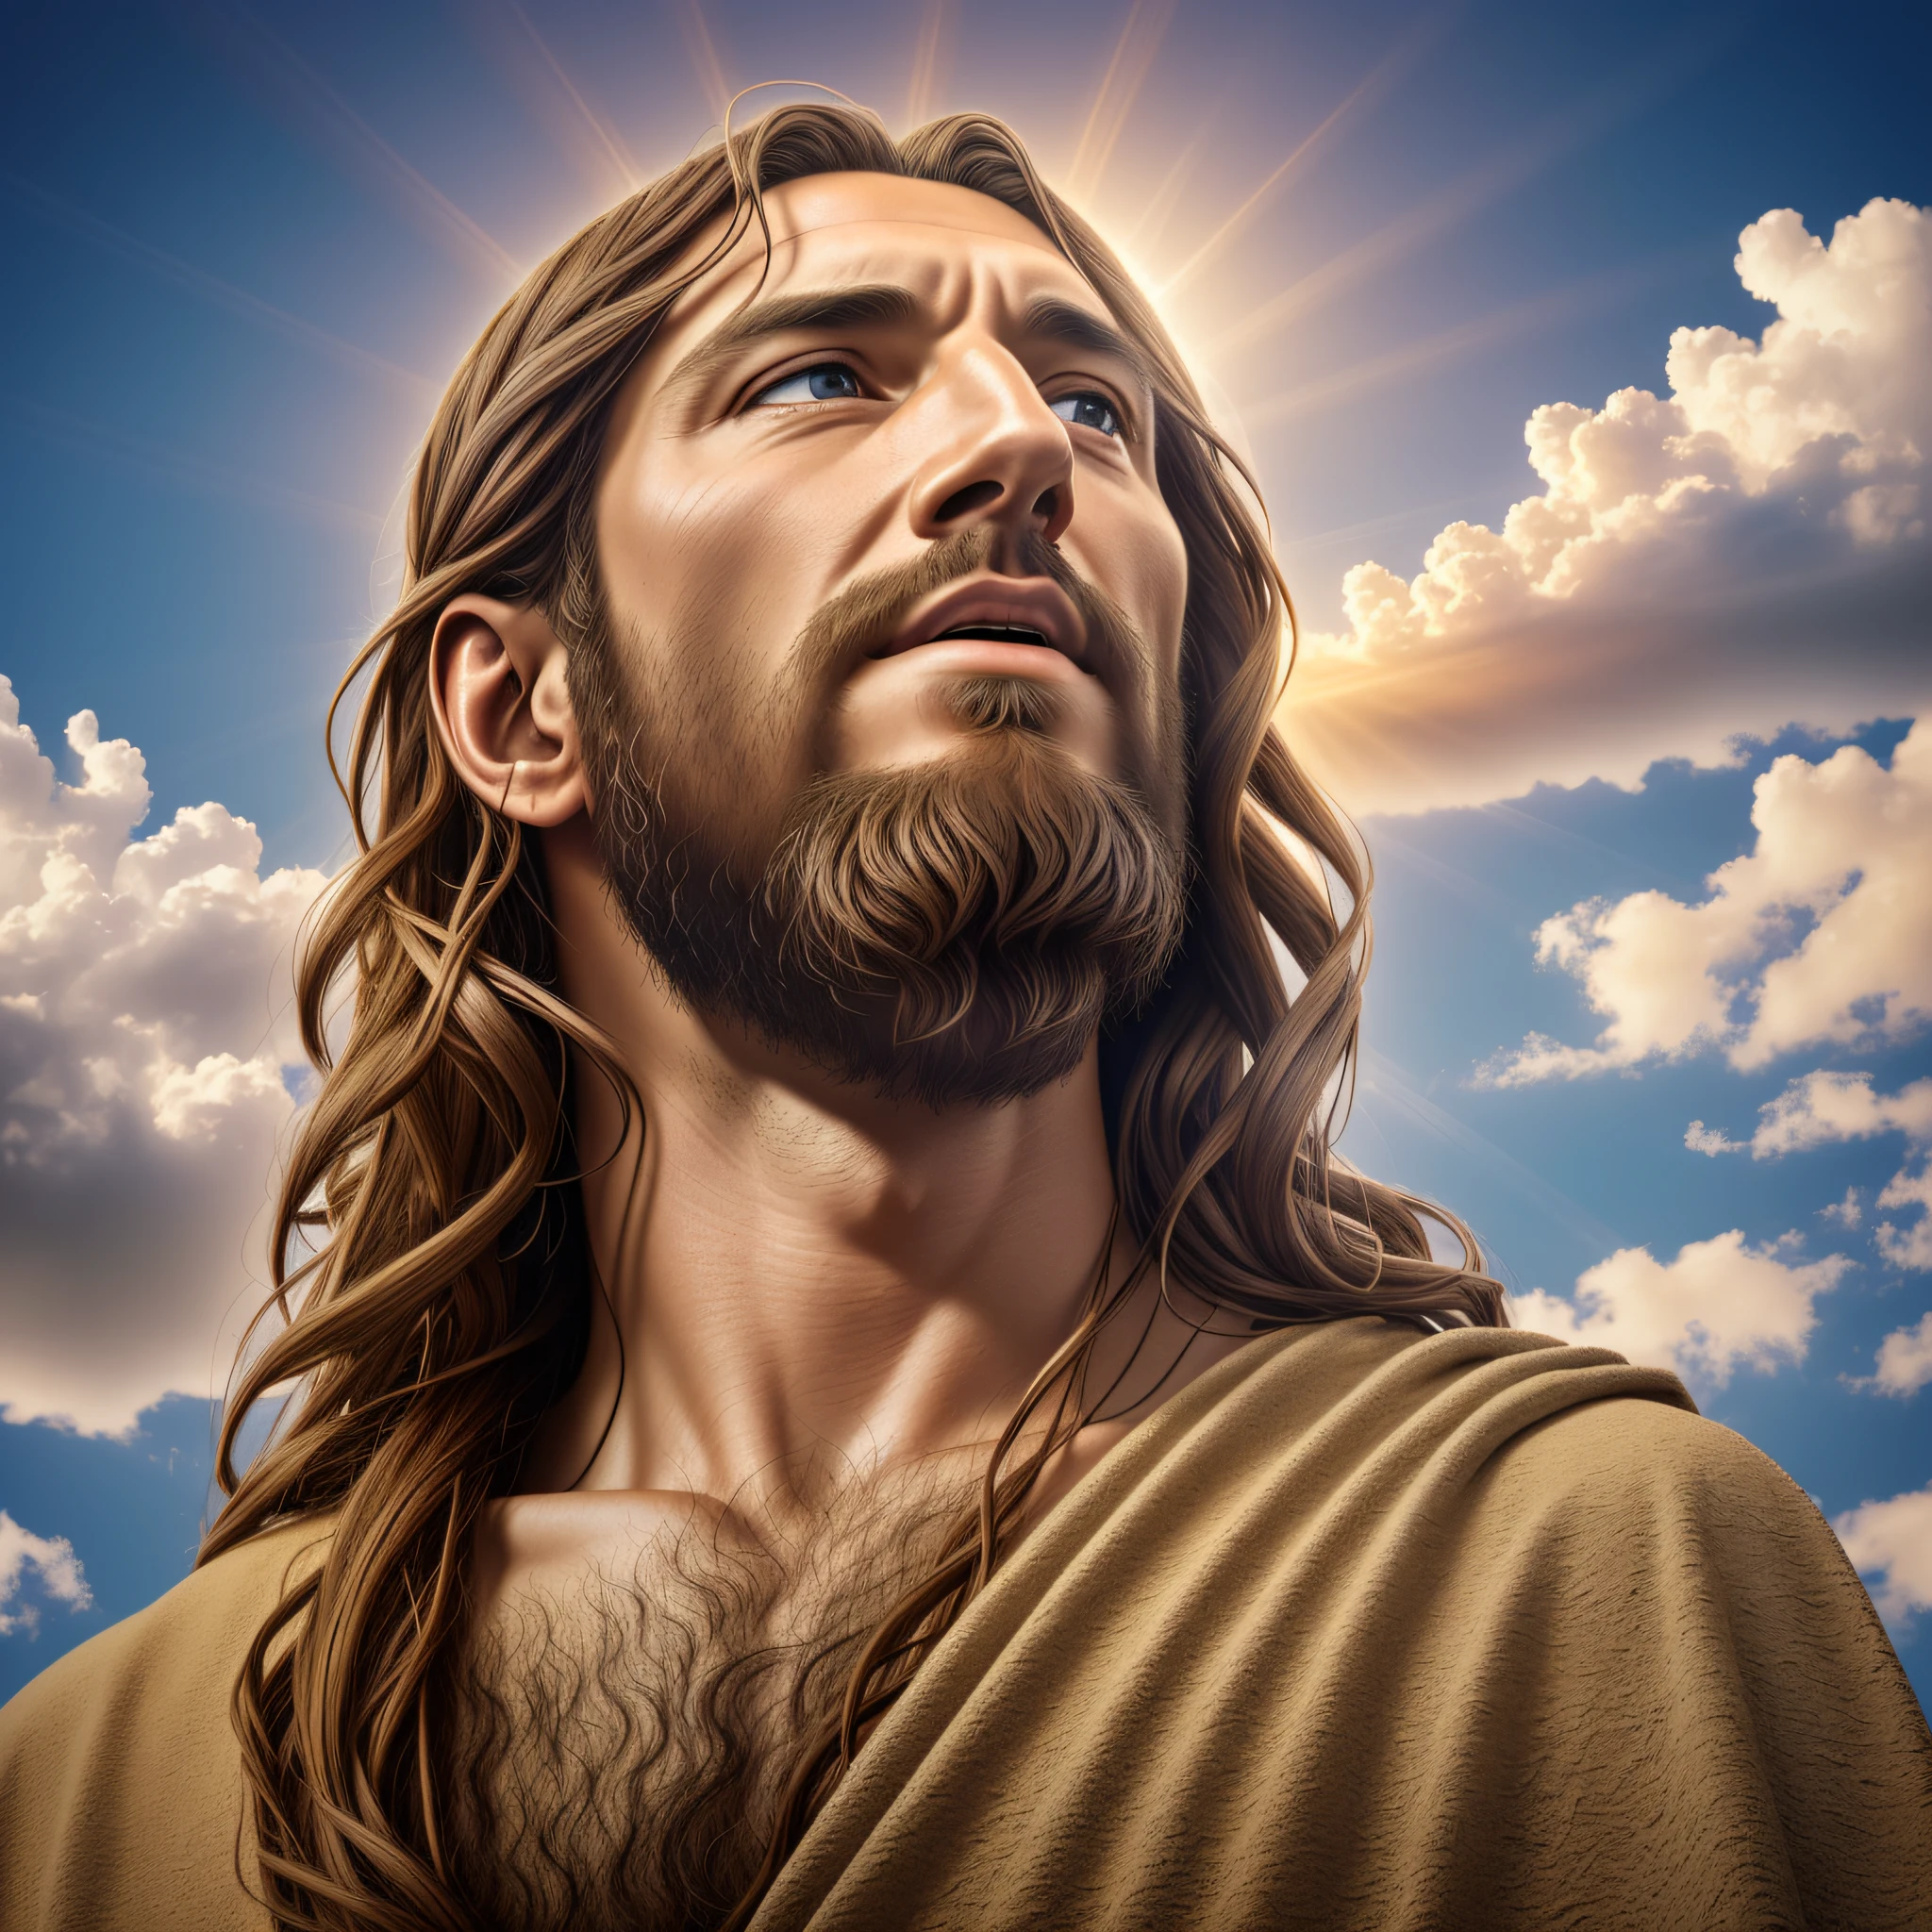 Отмеченная наградами реалистичная фотография Иисуса Христа (Глядя на небо:1.3), выражение, передающее чувство удовлетворения и победы, гипердетализация 4k --auto --s2